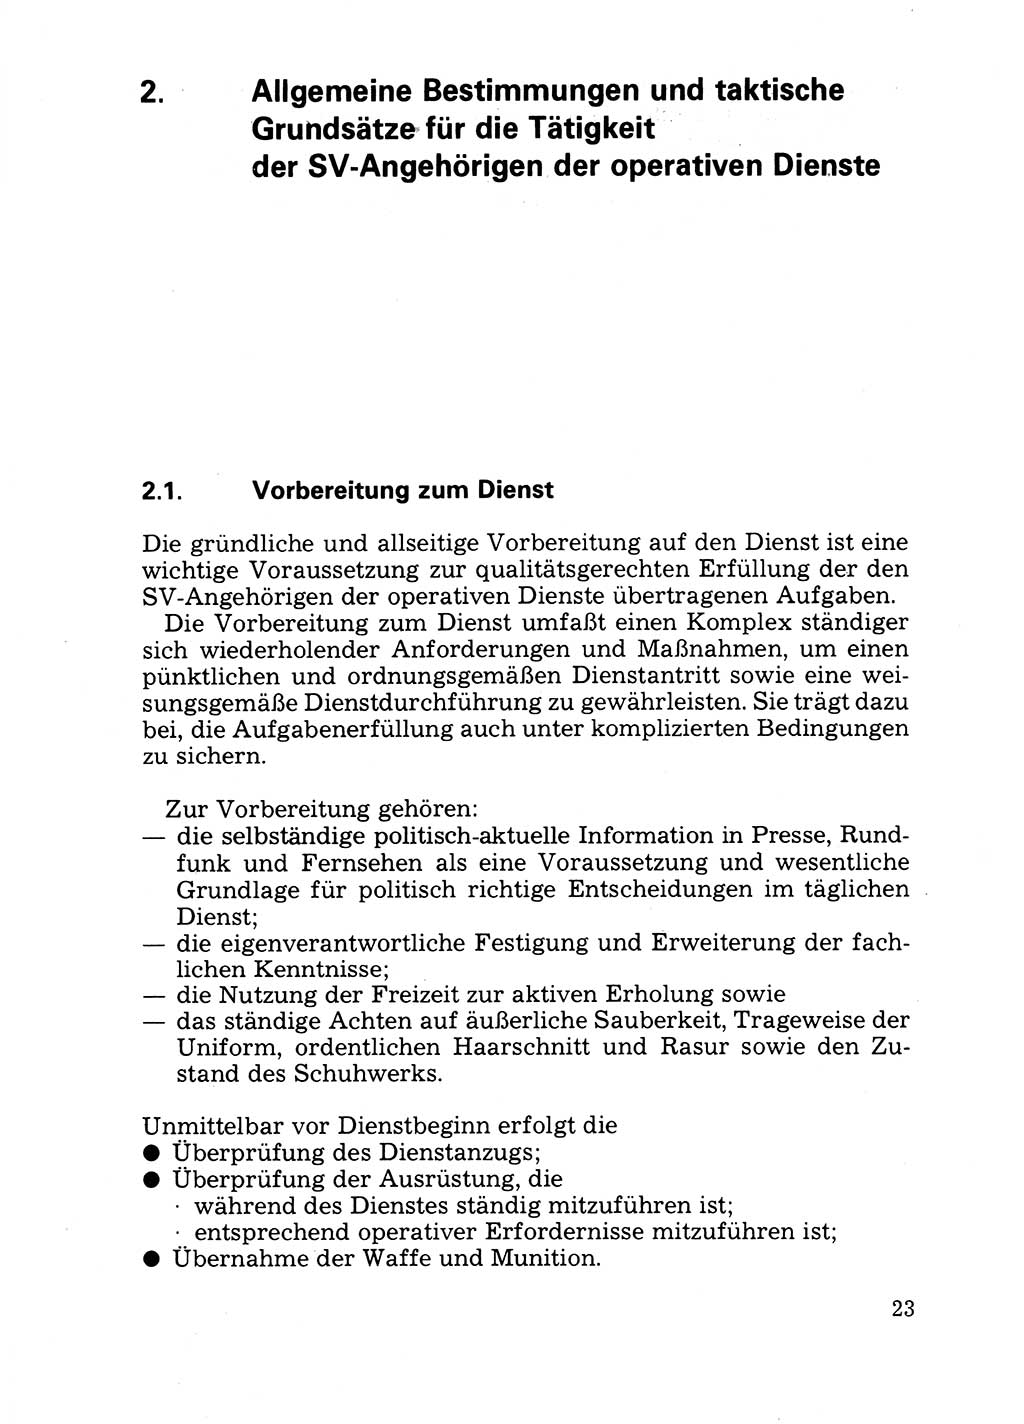 Handbuch für operative Dienste, Abteilung Strafvollzug (SV) [Ministerium des Innern (MdI) Deutsche Demokratische Republik (DDR)] 1981, Seite 23 (Hb. op. D. Abt. SV MdI DDR 1981, S. 23)